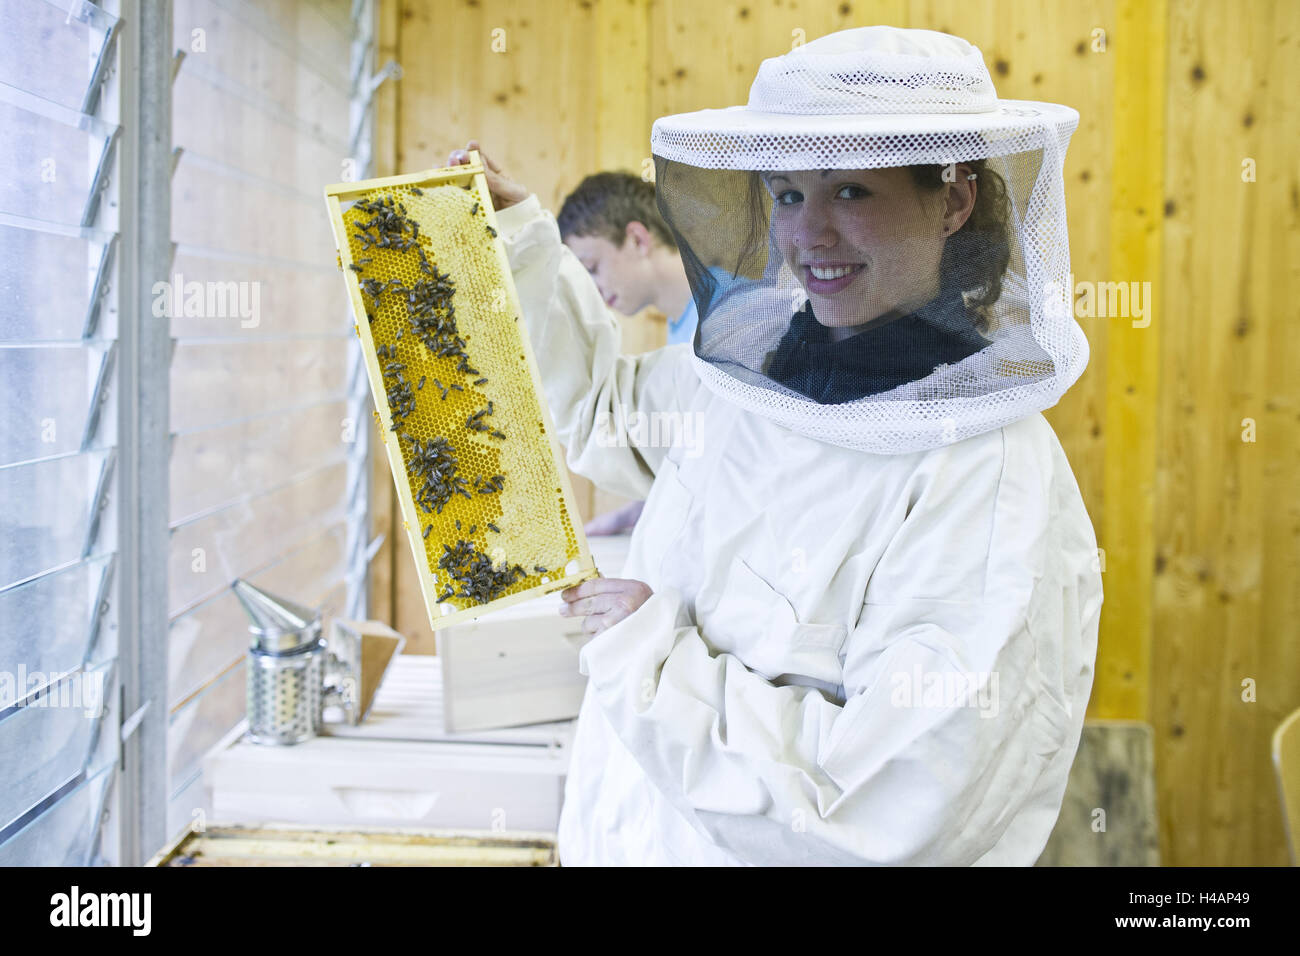 El apicultor, honeycomb, ropa protectora, Foto de stock